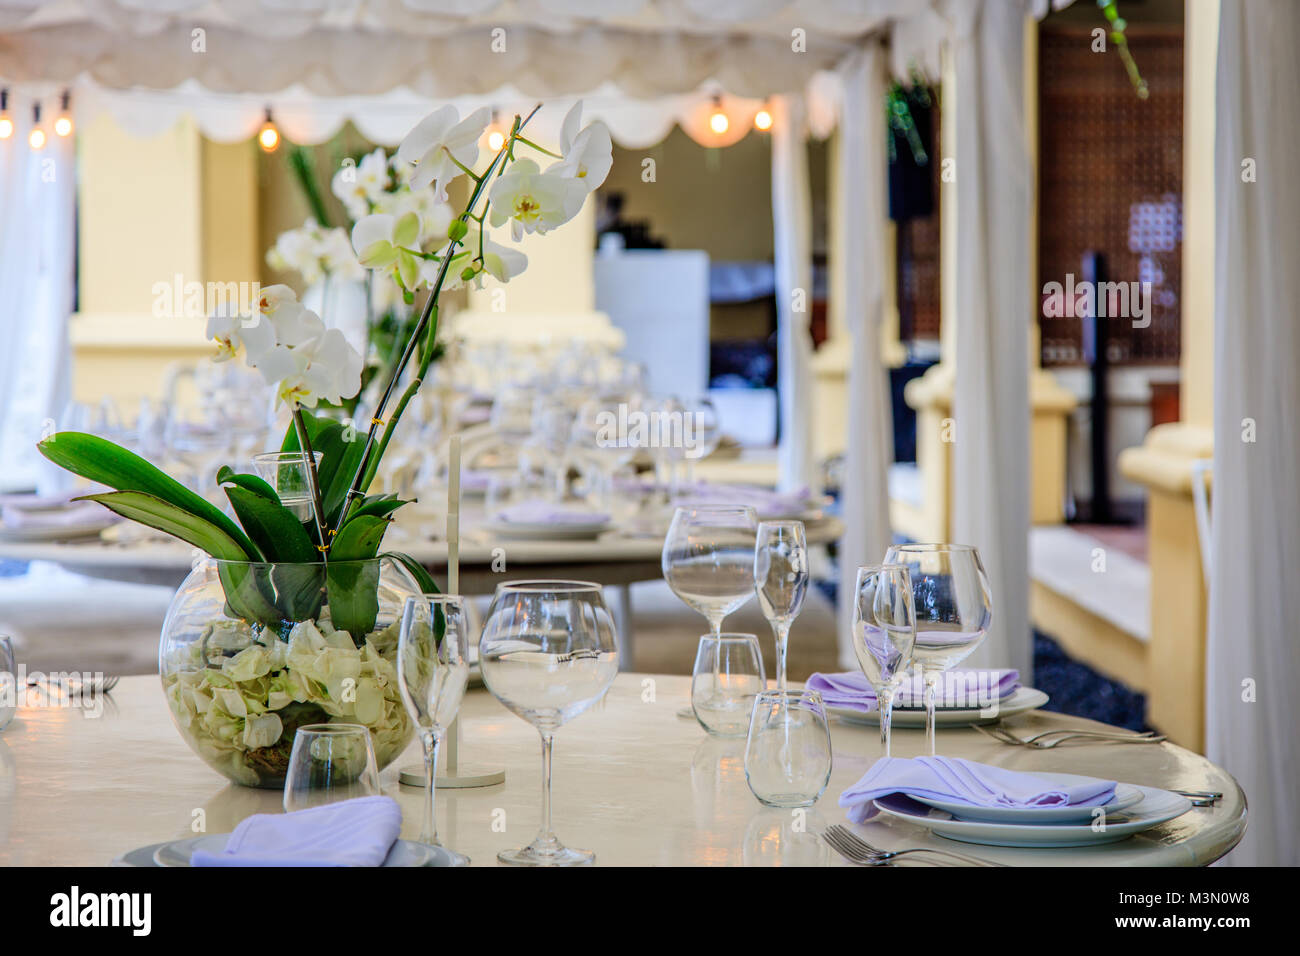 Définir des tables pour un dîner de mariage blanc décoré d'orchidées. Vases, verres, assiettes, serviettes, couverts. Banque D'Images